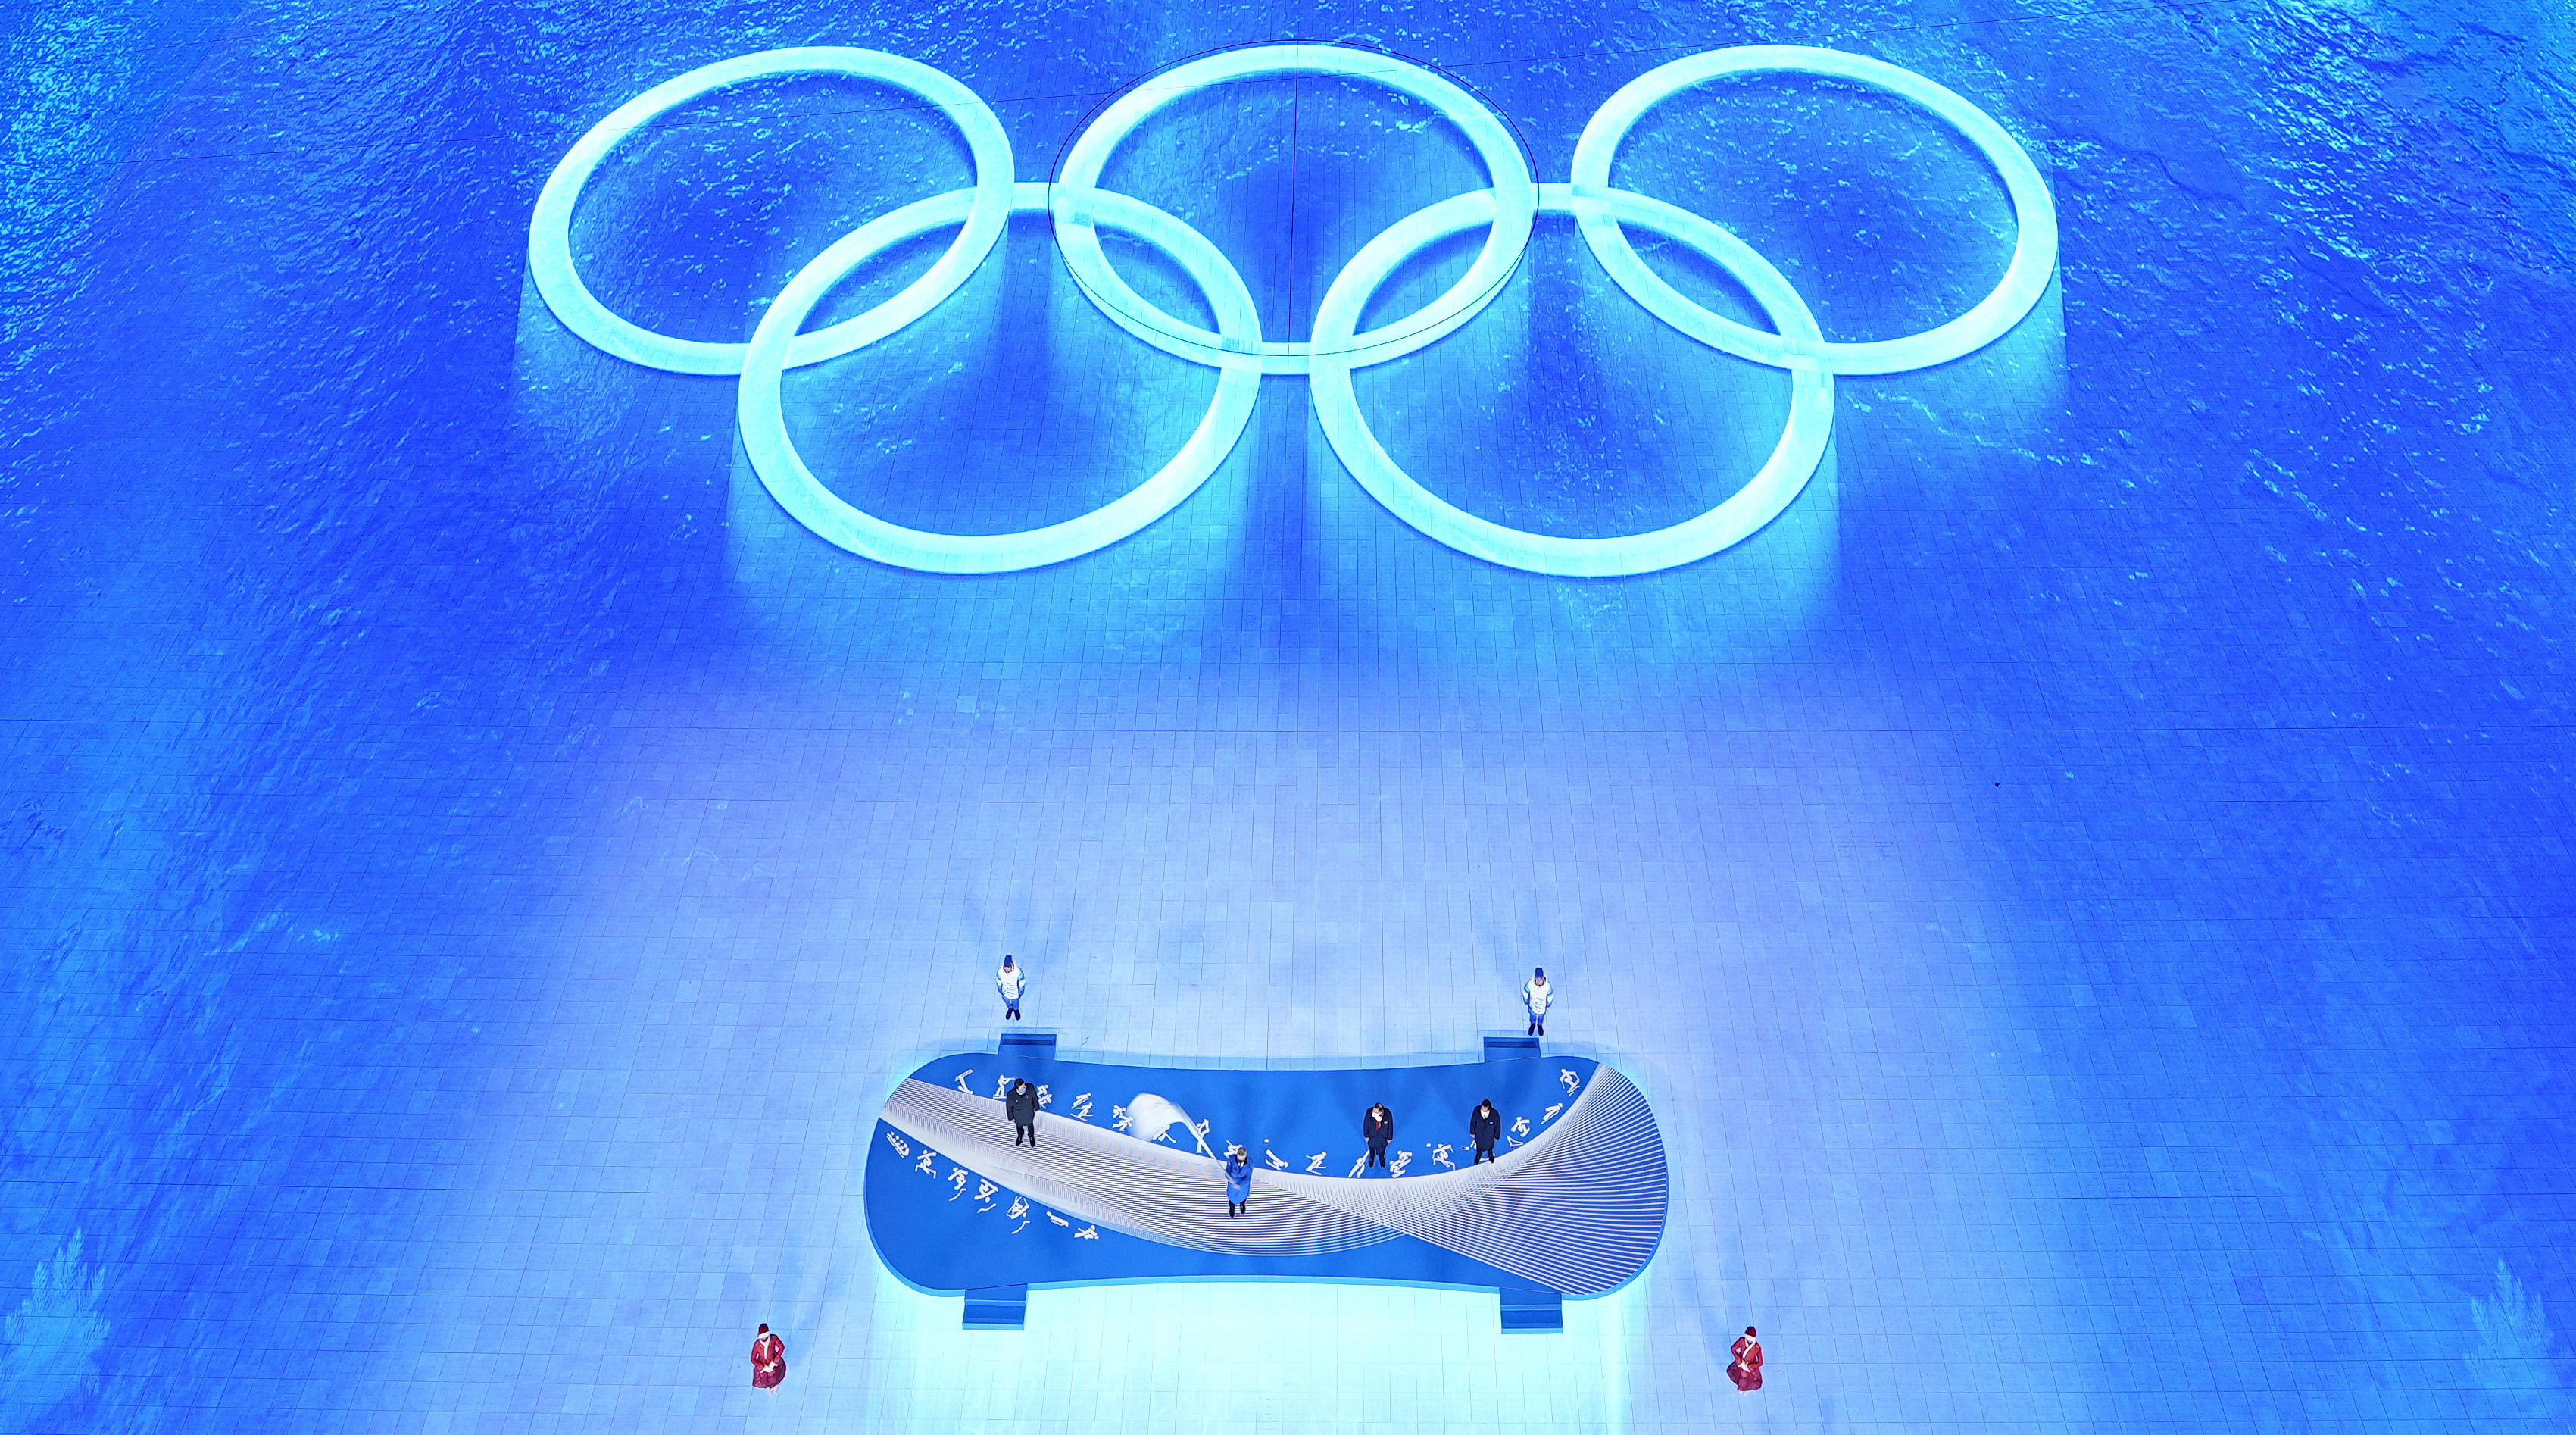 Cérémonie de clôture des Jeux olympiques de Pékin : fin des Jeux d’hiver controversés et troublés en Chine